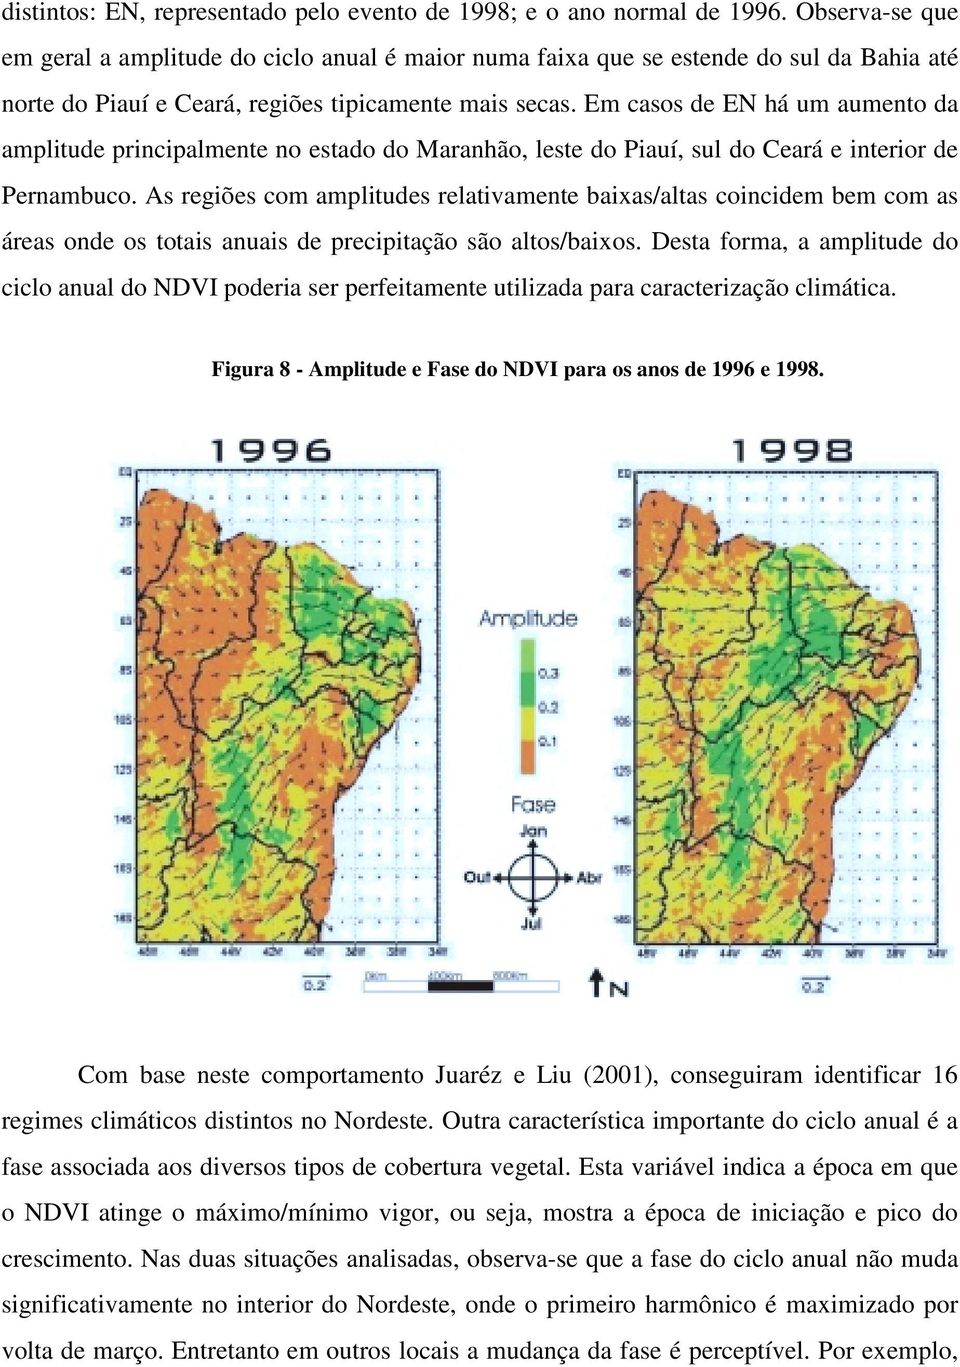 Em casos de EN há um aumento da amplitude principalmente no estado do Maranhão, leste do Piauí, sul do Ceará e interior de Pernambuco.